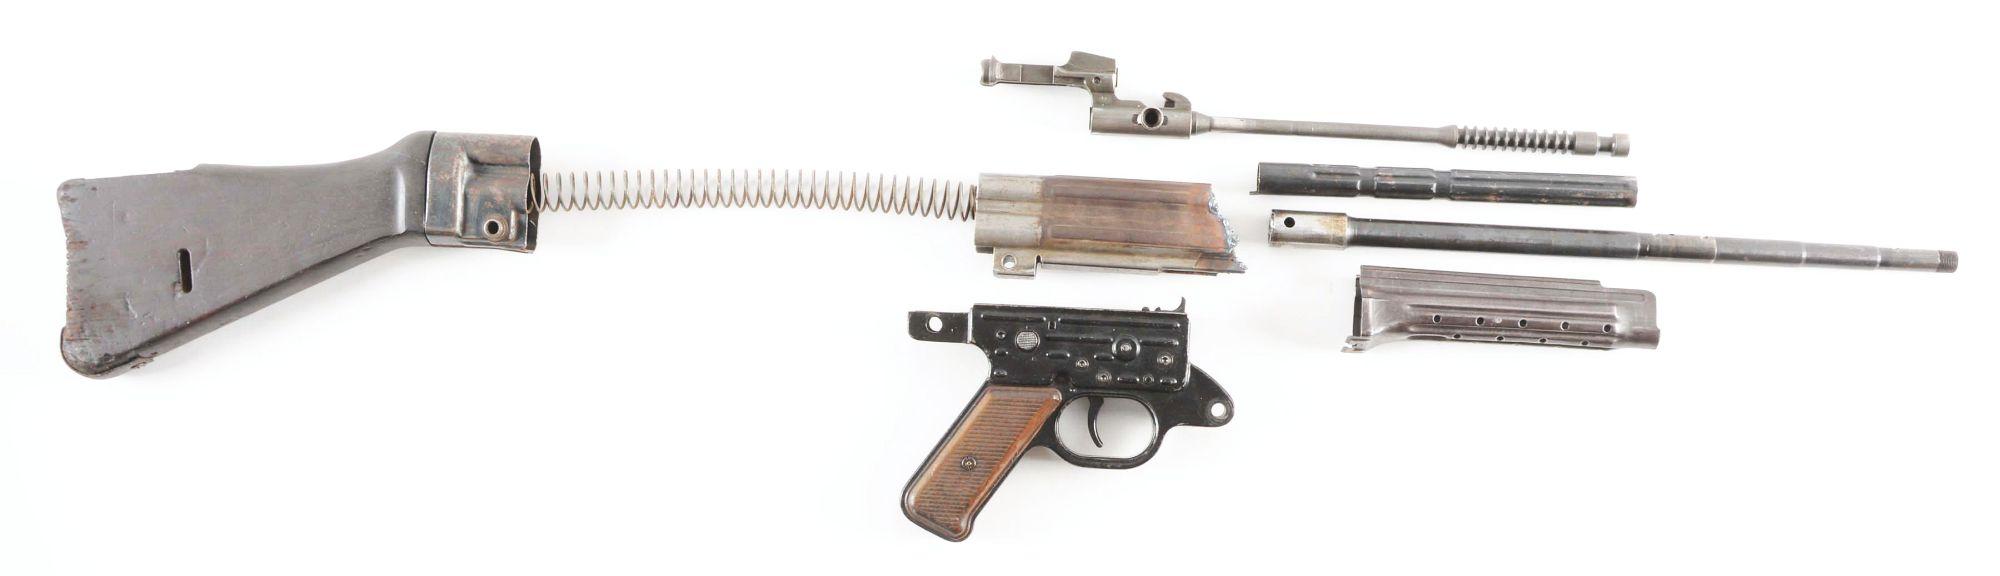 GERMAN MP-44 MACHINE GUN PARTS